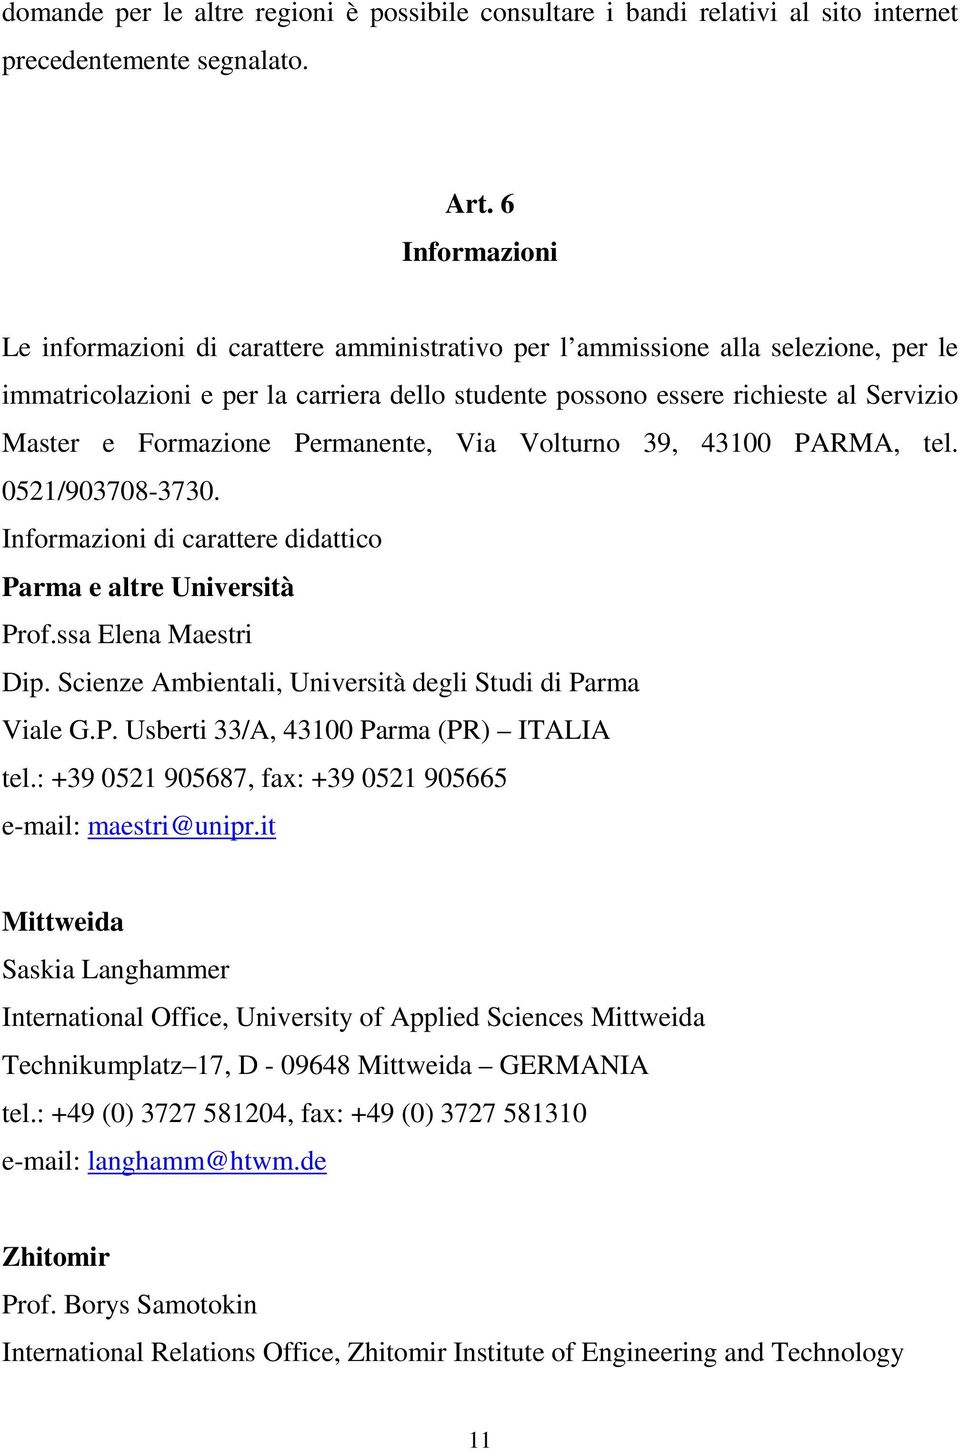 Formazione Permanente, Via Volturno 39, 43100 PARMA, tel. 0521/903708-3730. Informazioni di carattere didattico Parma e altre Università Prof.ssa Elena Maestri Dip.